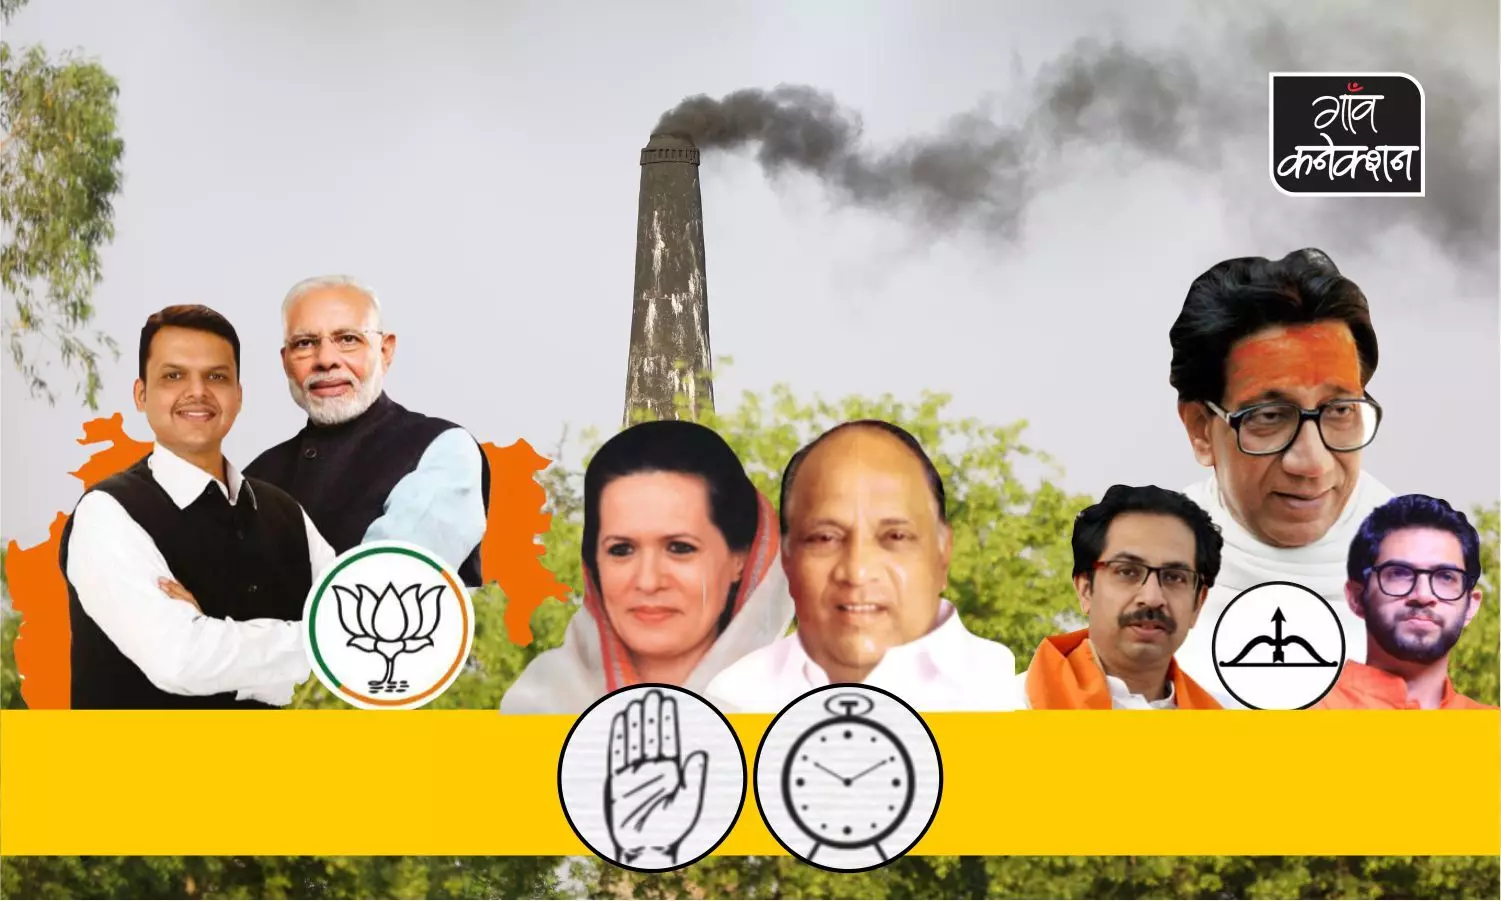 महाराष्ट्र विधानसभा चुनाव 2019: पार्टियों के चुनावी घोषणा पत्र में पर्यावरण कहां?